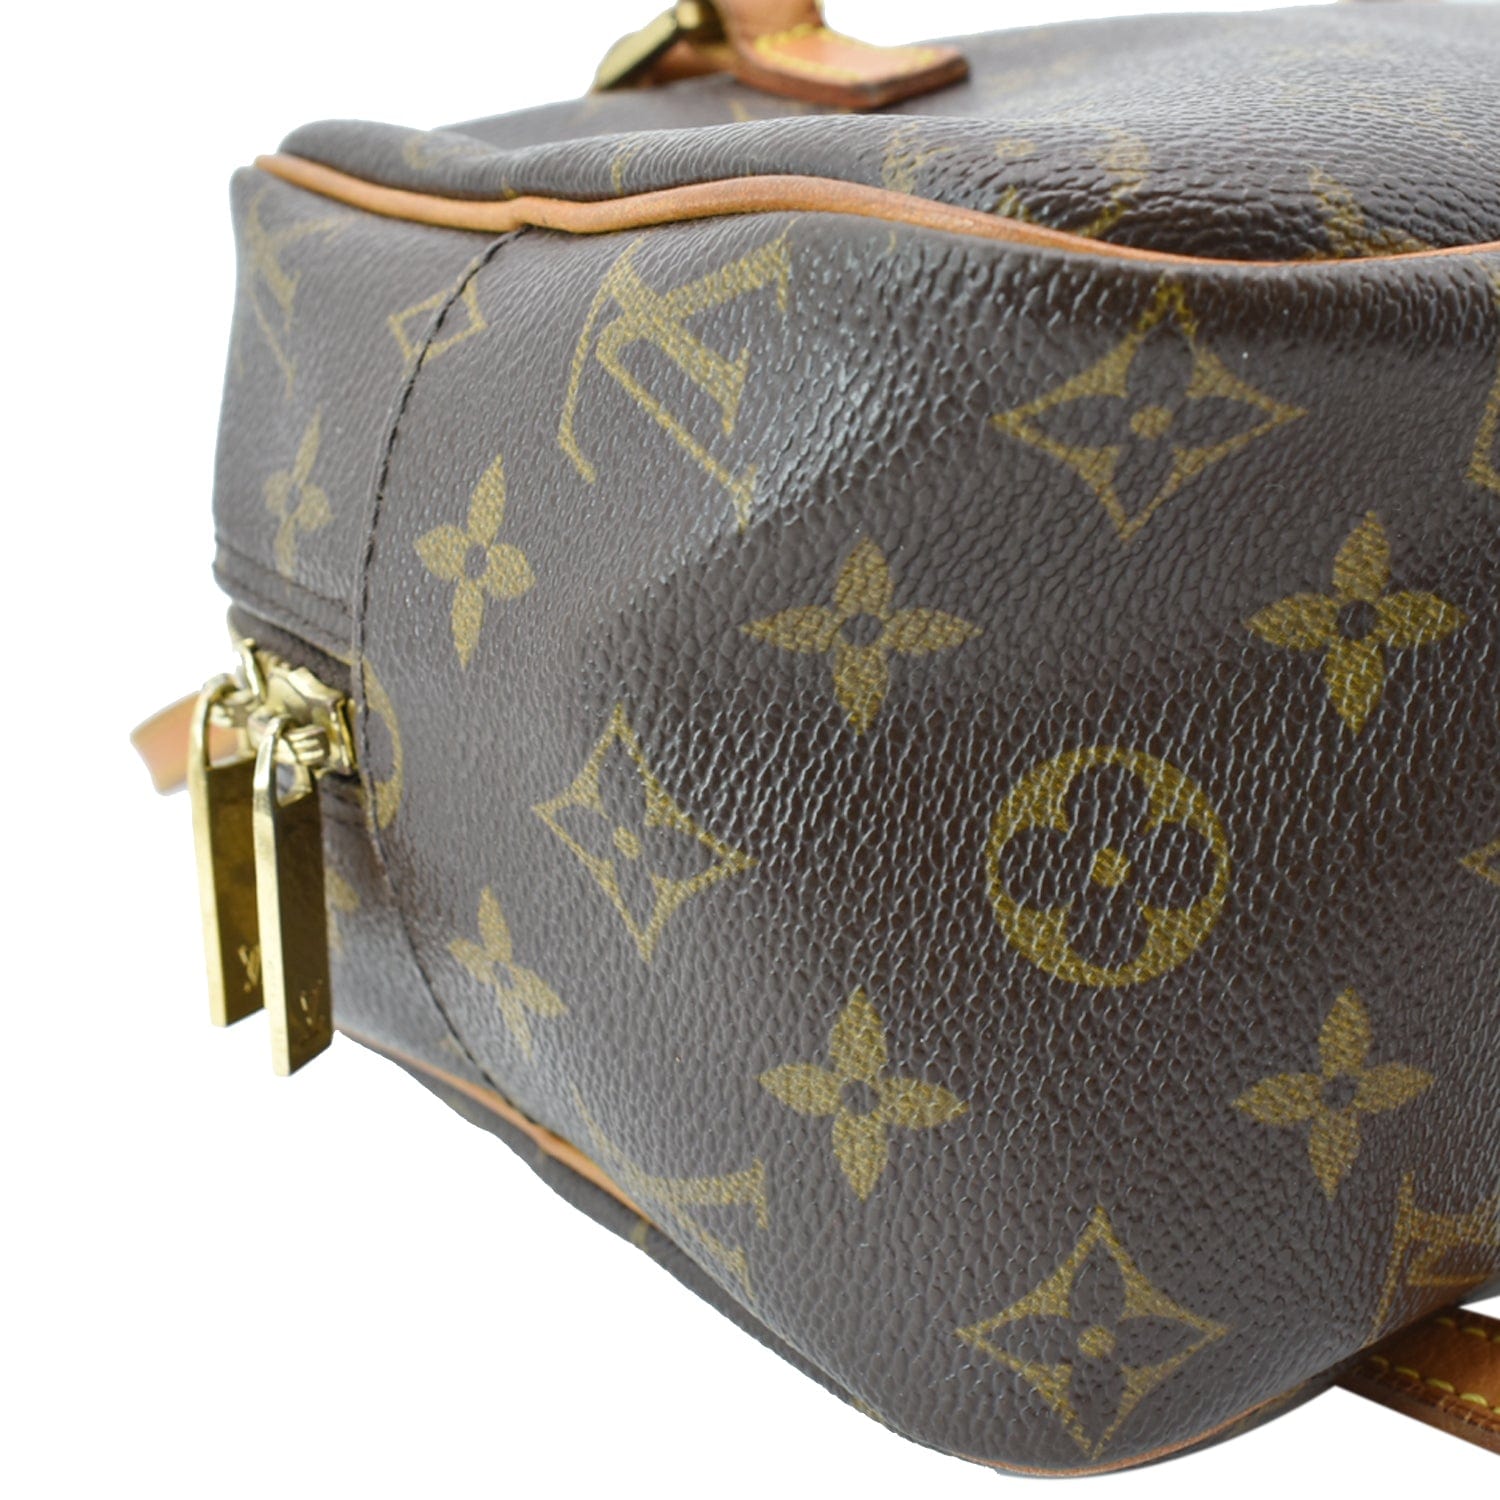 Louis Vuitton Vintage - Monogram Cite MM Bag - Brown - Leather